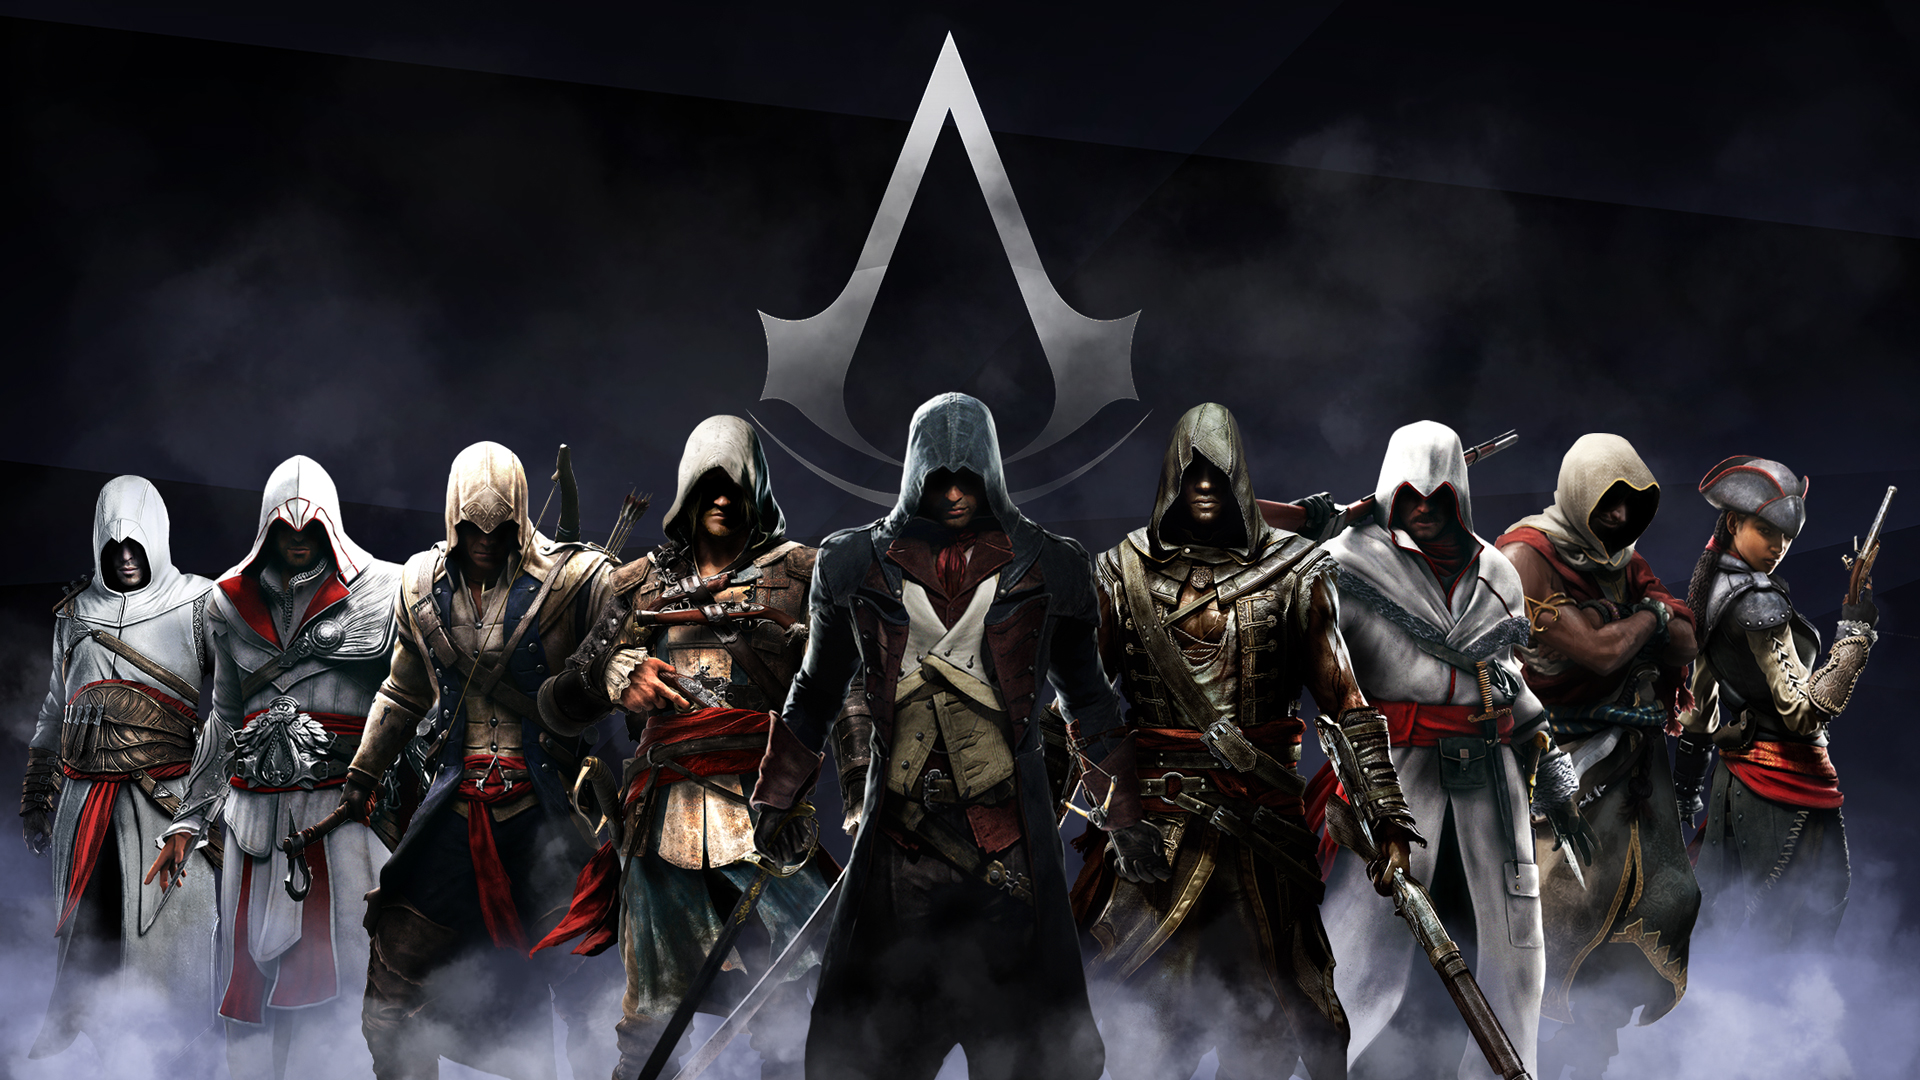 Unduh 86 Wallpaper Wide Assassin S Creed Gambar Populer Terbaik Posts Id